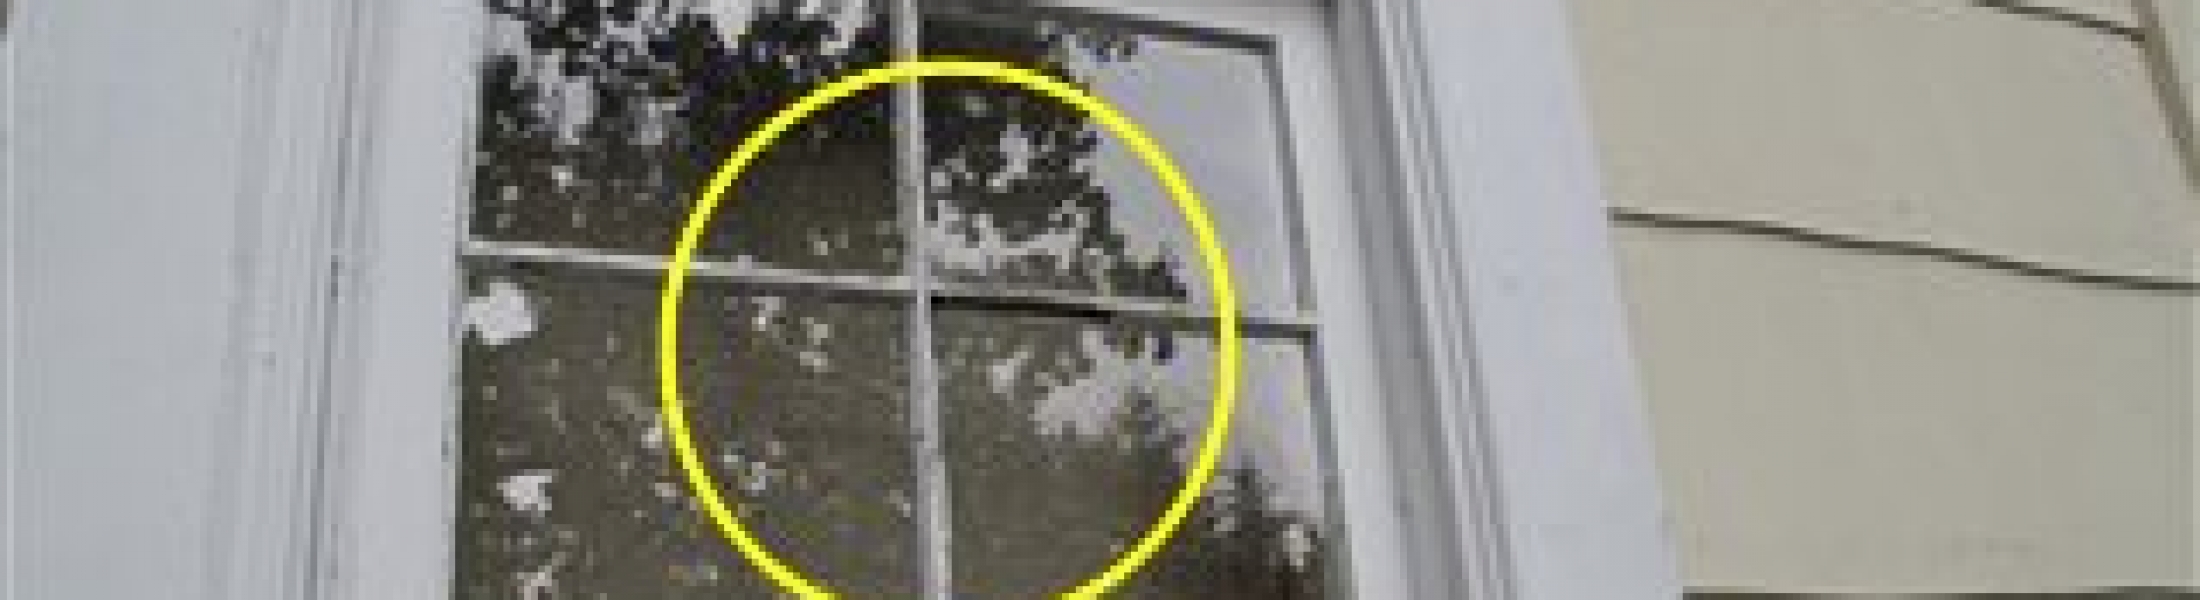 glazing putty window